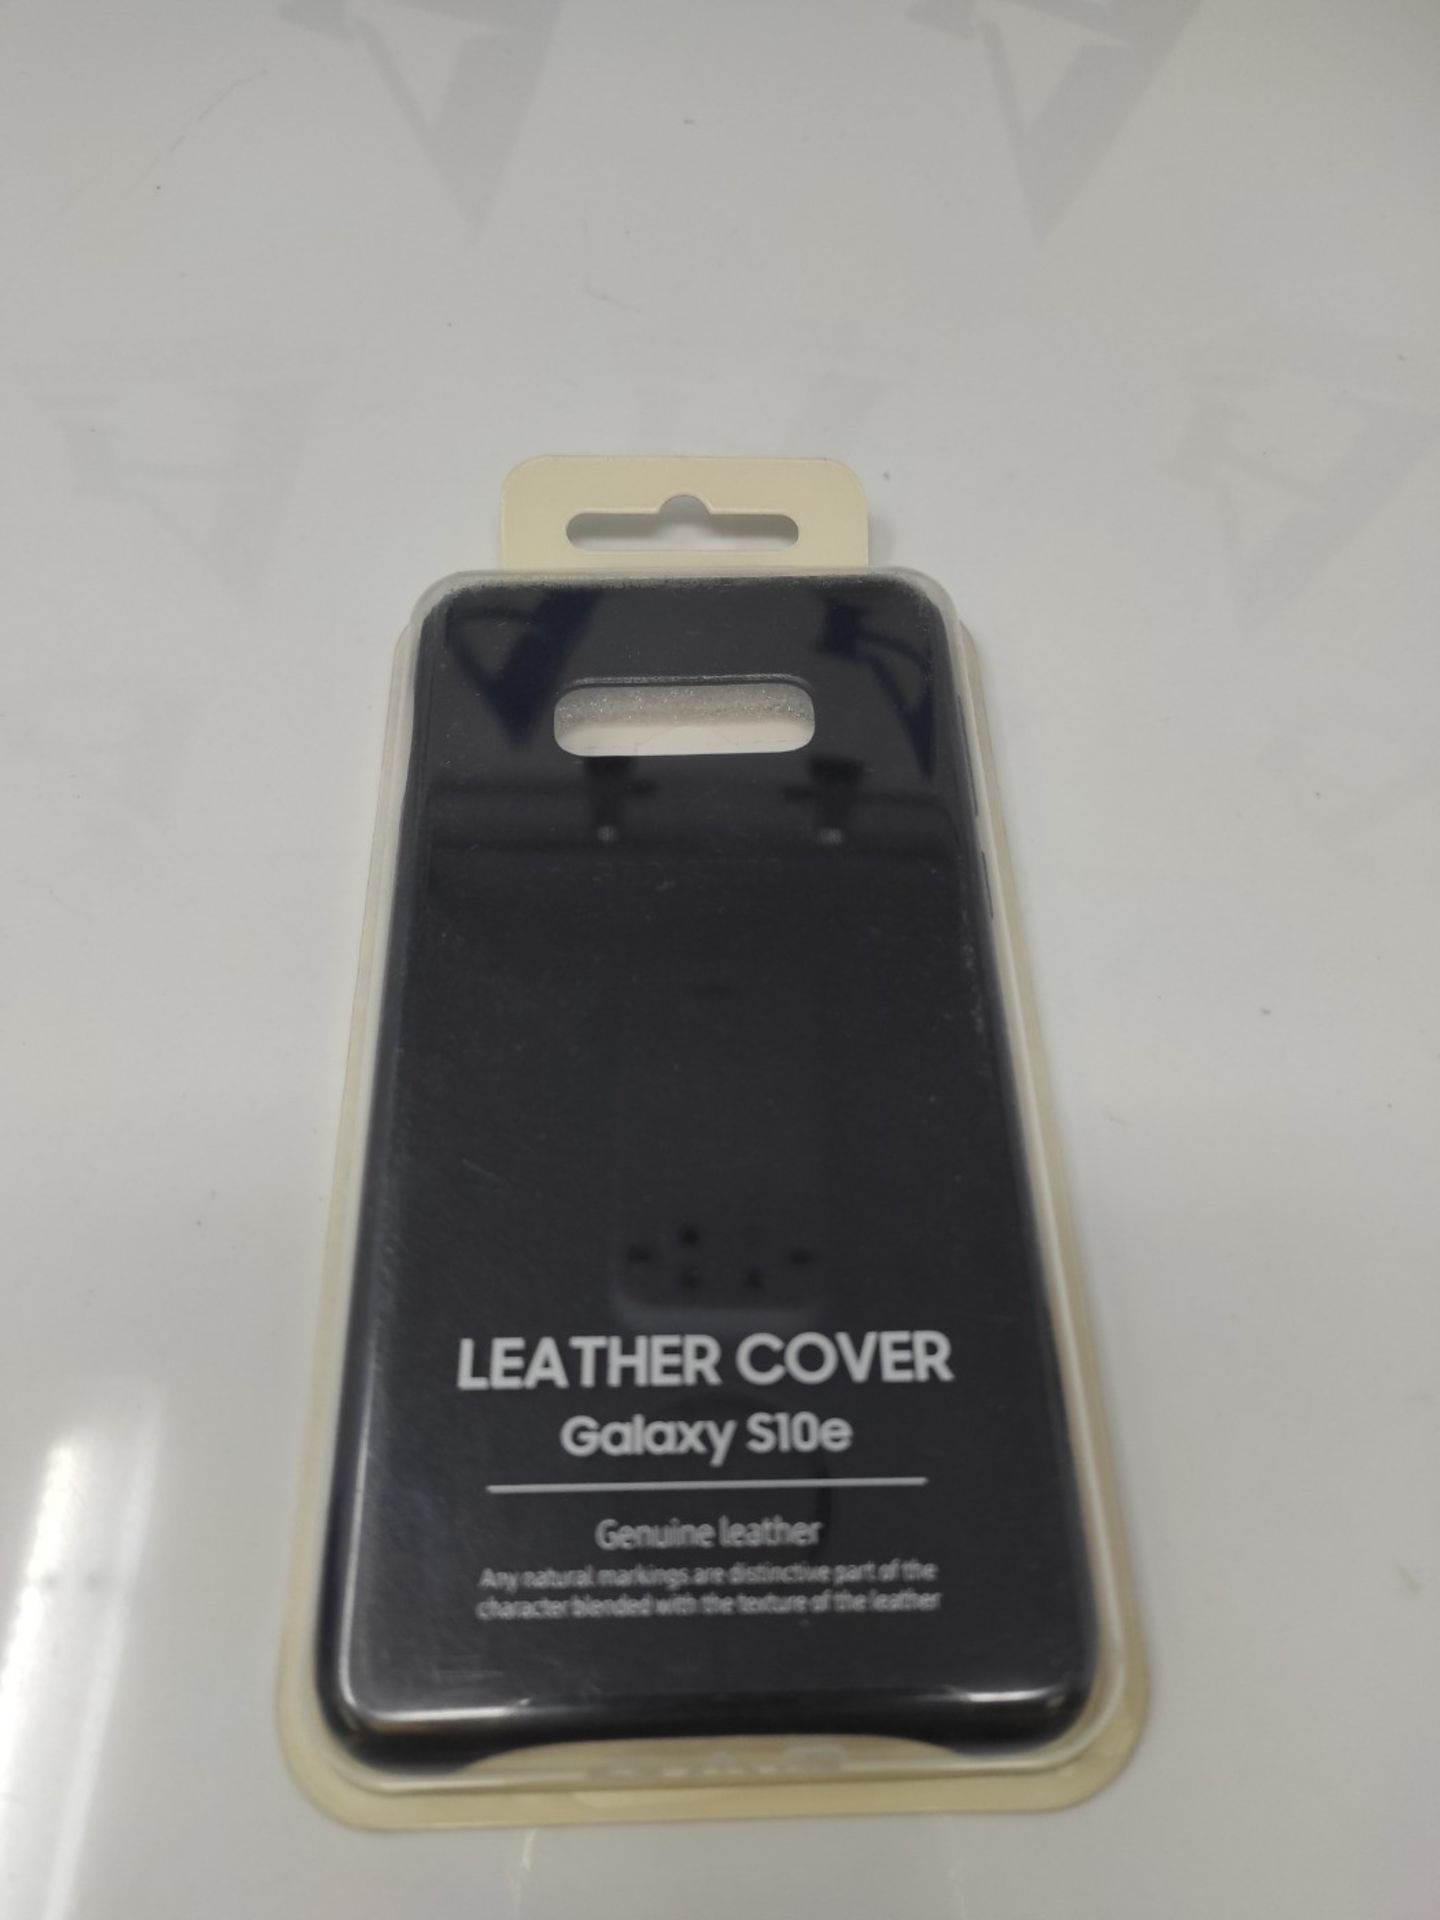 Samsung EF-VG970LBEGWW Leather Cover for S10 E, Black - Image 2 of 3